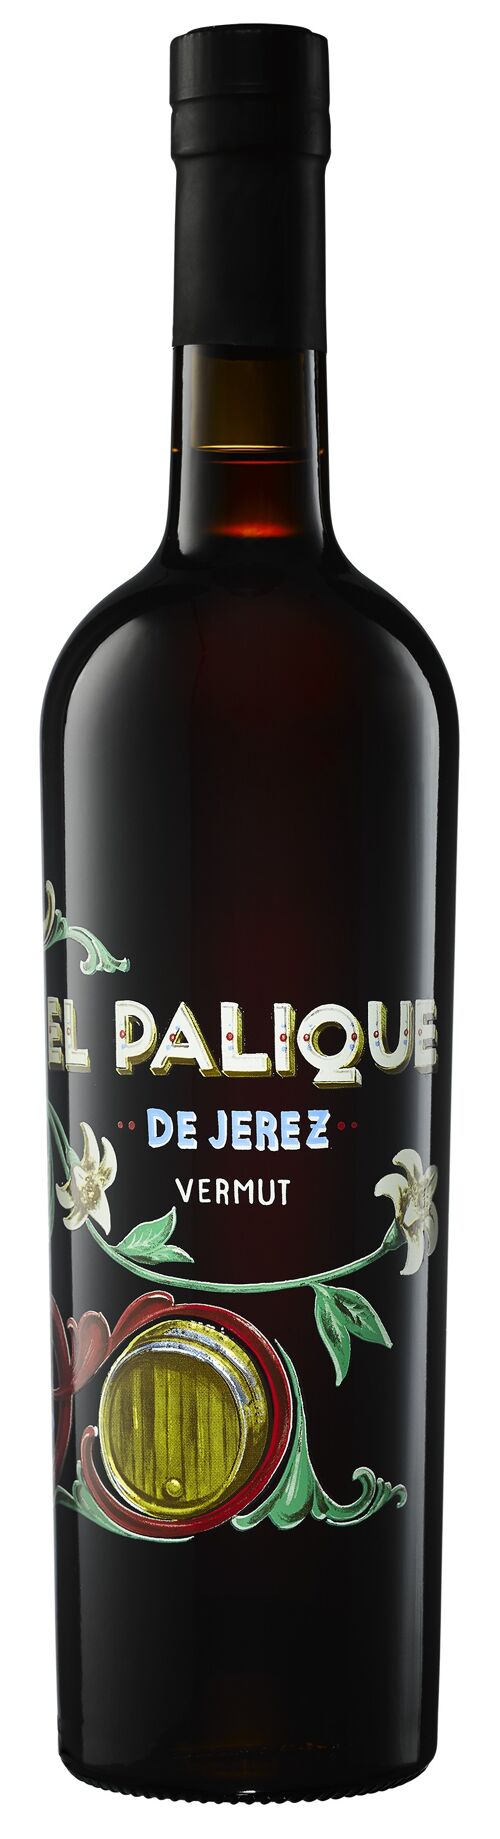 El Palique de Jerez Vermouth